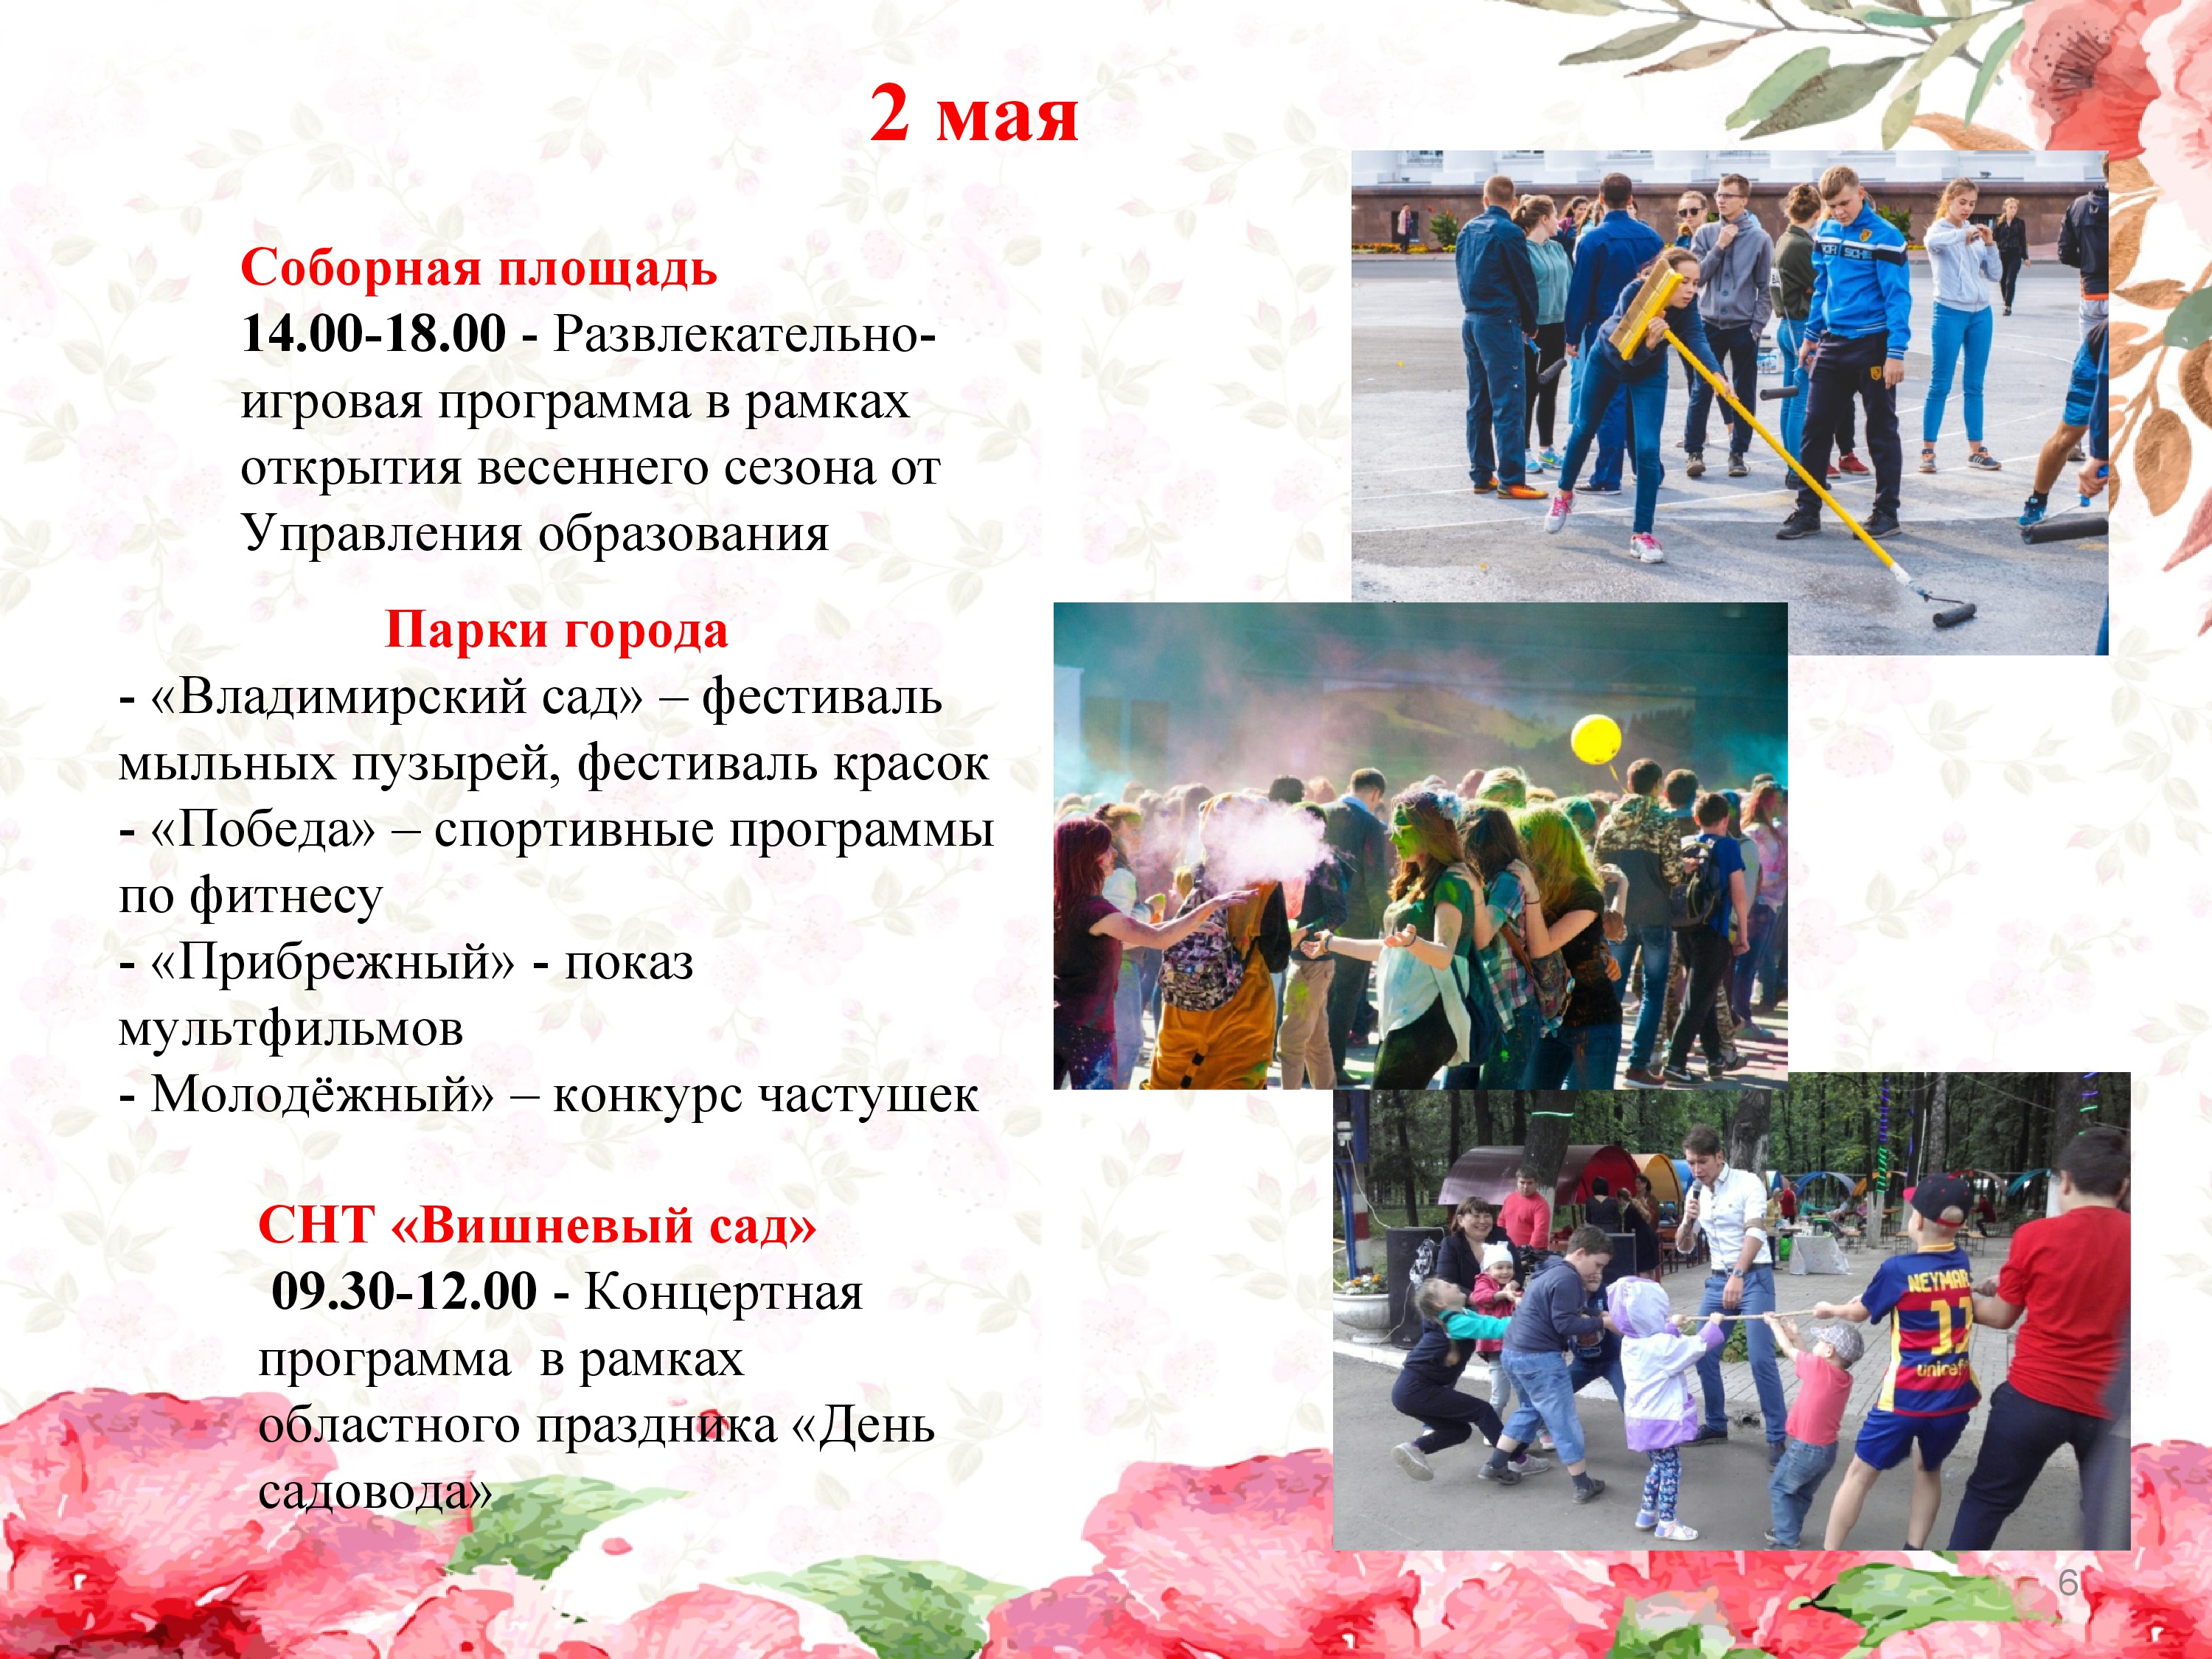 5 мая какой праздник в россии. Игровая программа на 1 мая. План развлекательных мероприятий на майские. 2 Мая праздник. Название игровой программы.